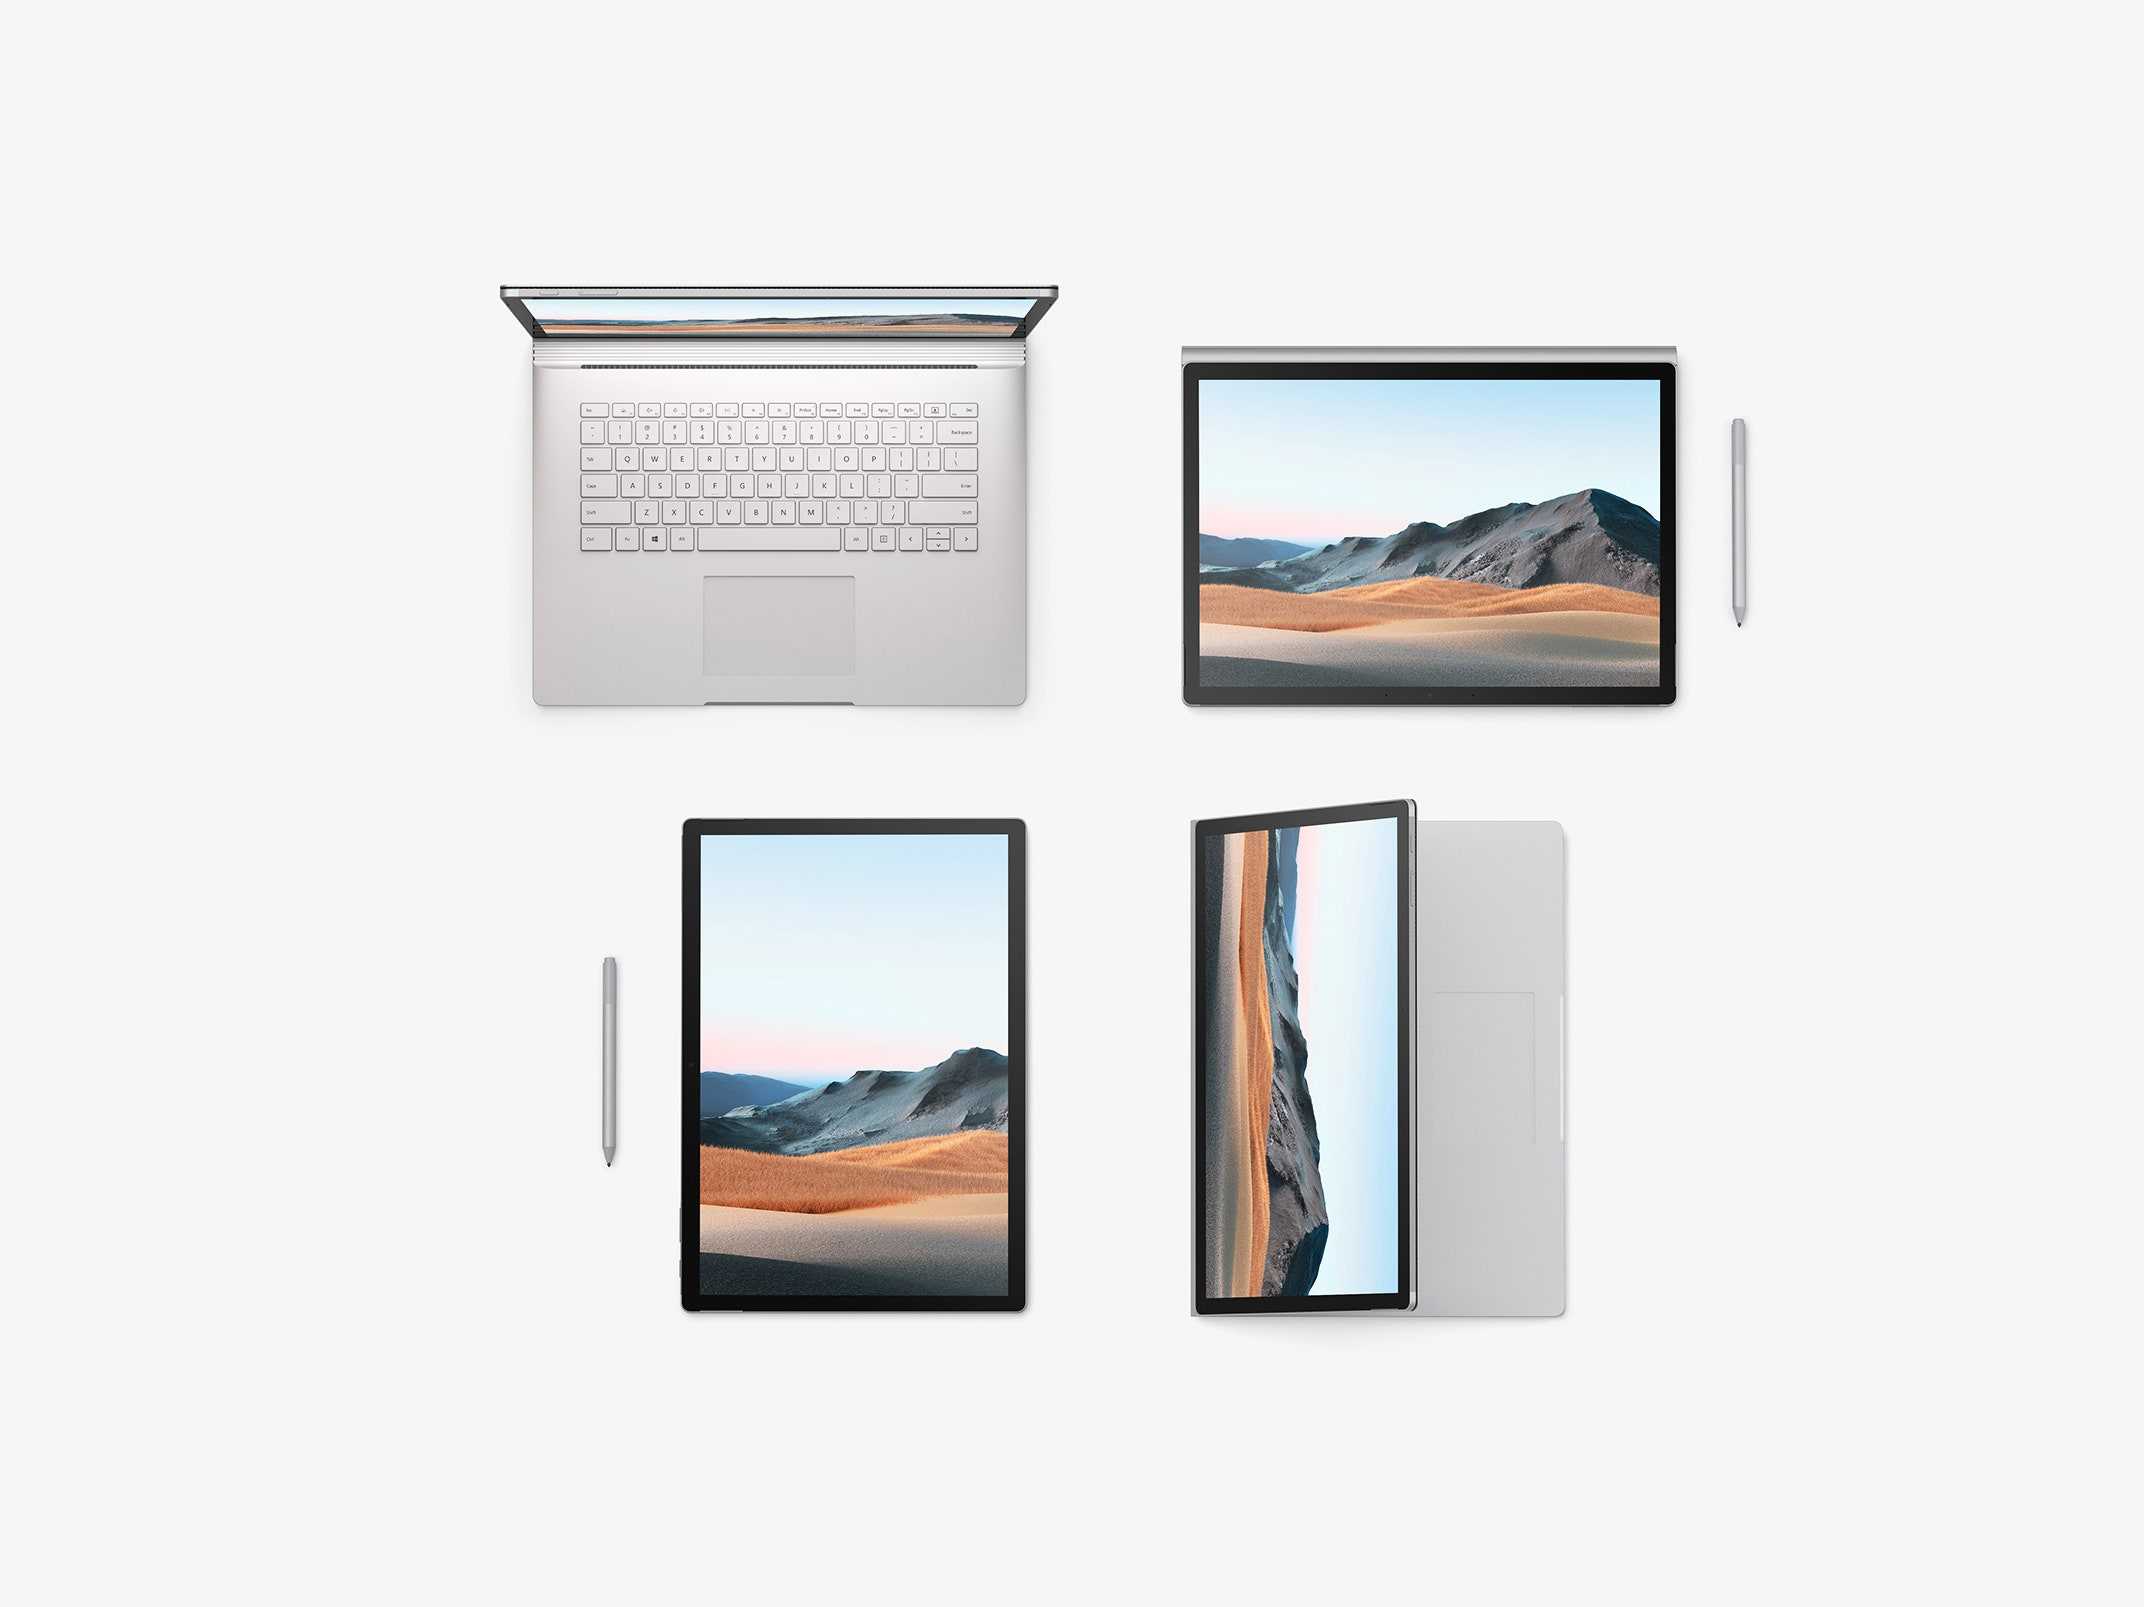 Ноутбук Microsoft Surface Book - подробные характеристики обзоры видео фото Цены в интернет-магазинах где можно купить ноутбук Microsoft Surface Book